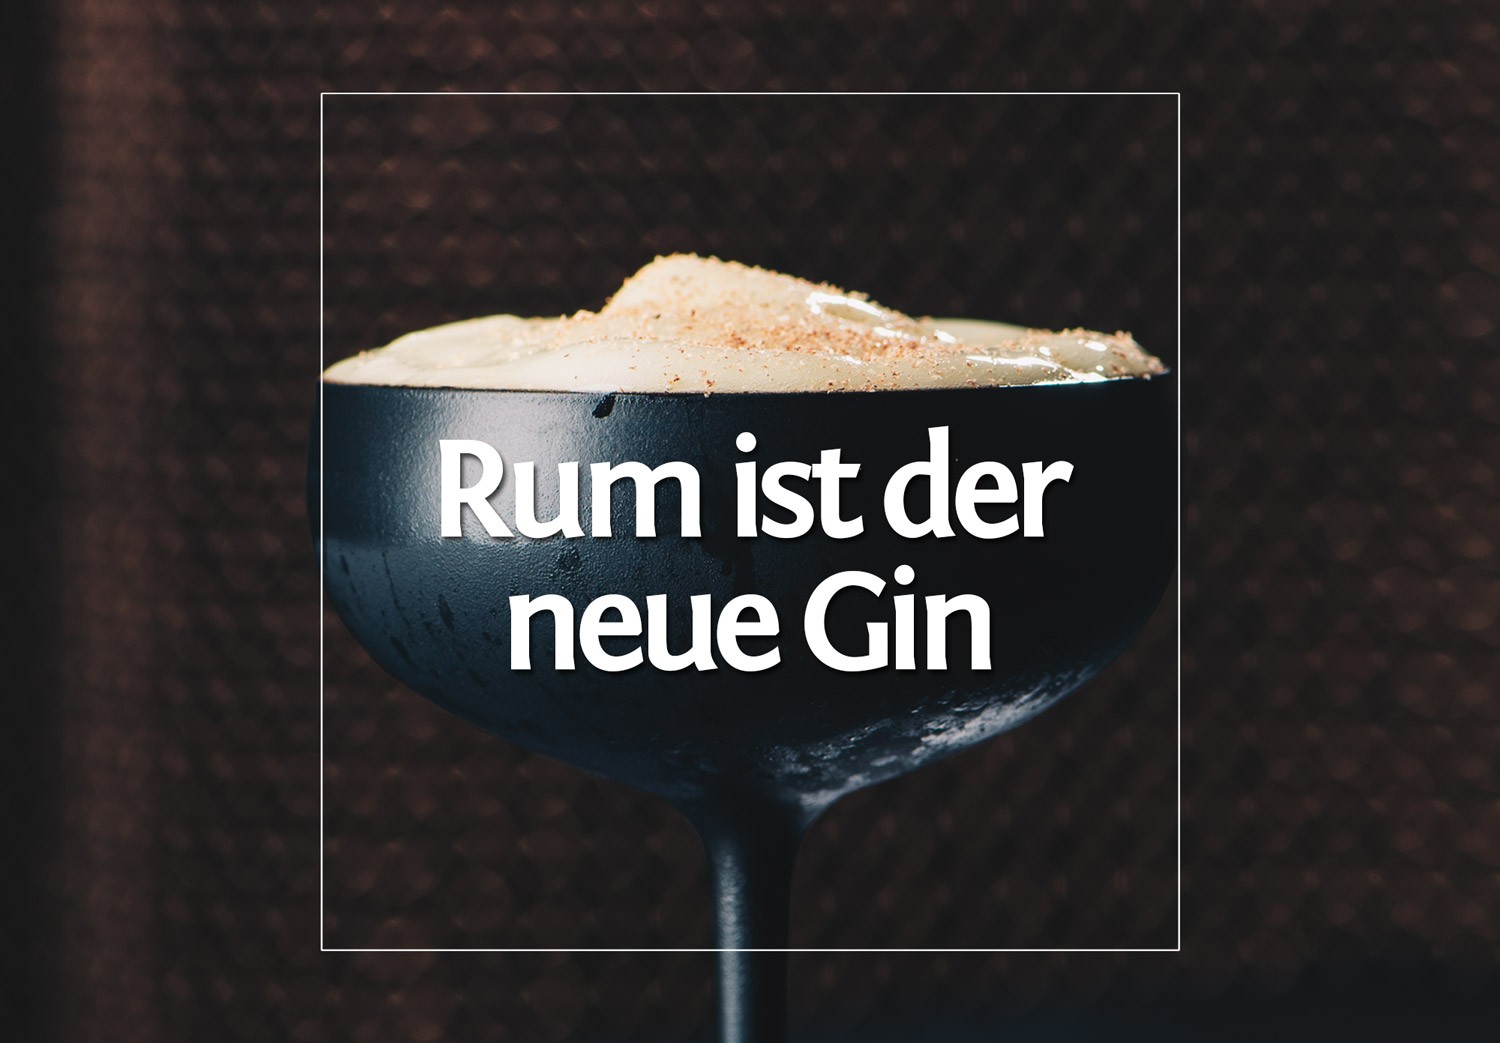 Rum ist der neue Gin – haben sie gesagt.